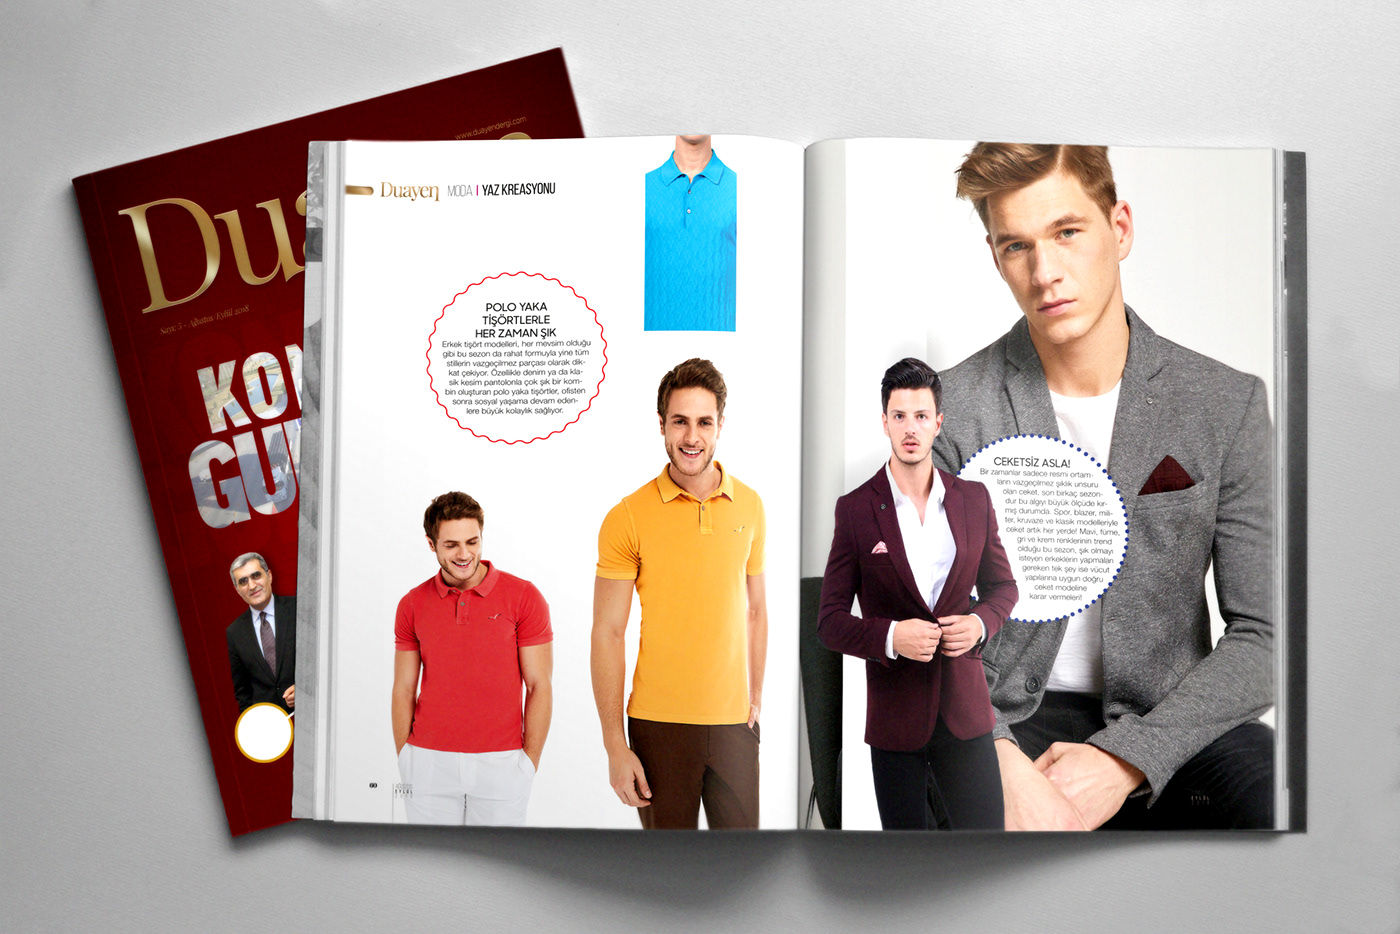 Dergi magazine design creative kreatif dergi tasarımı Dergi Kapak